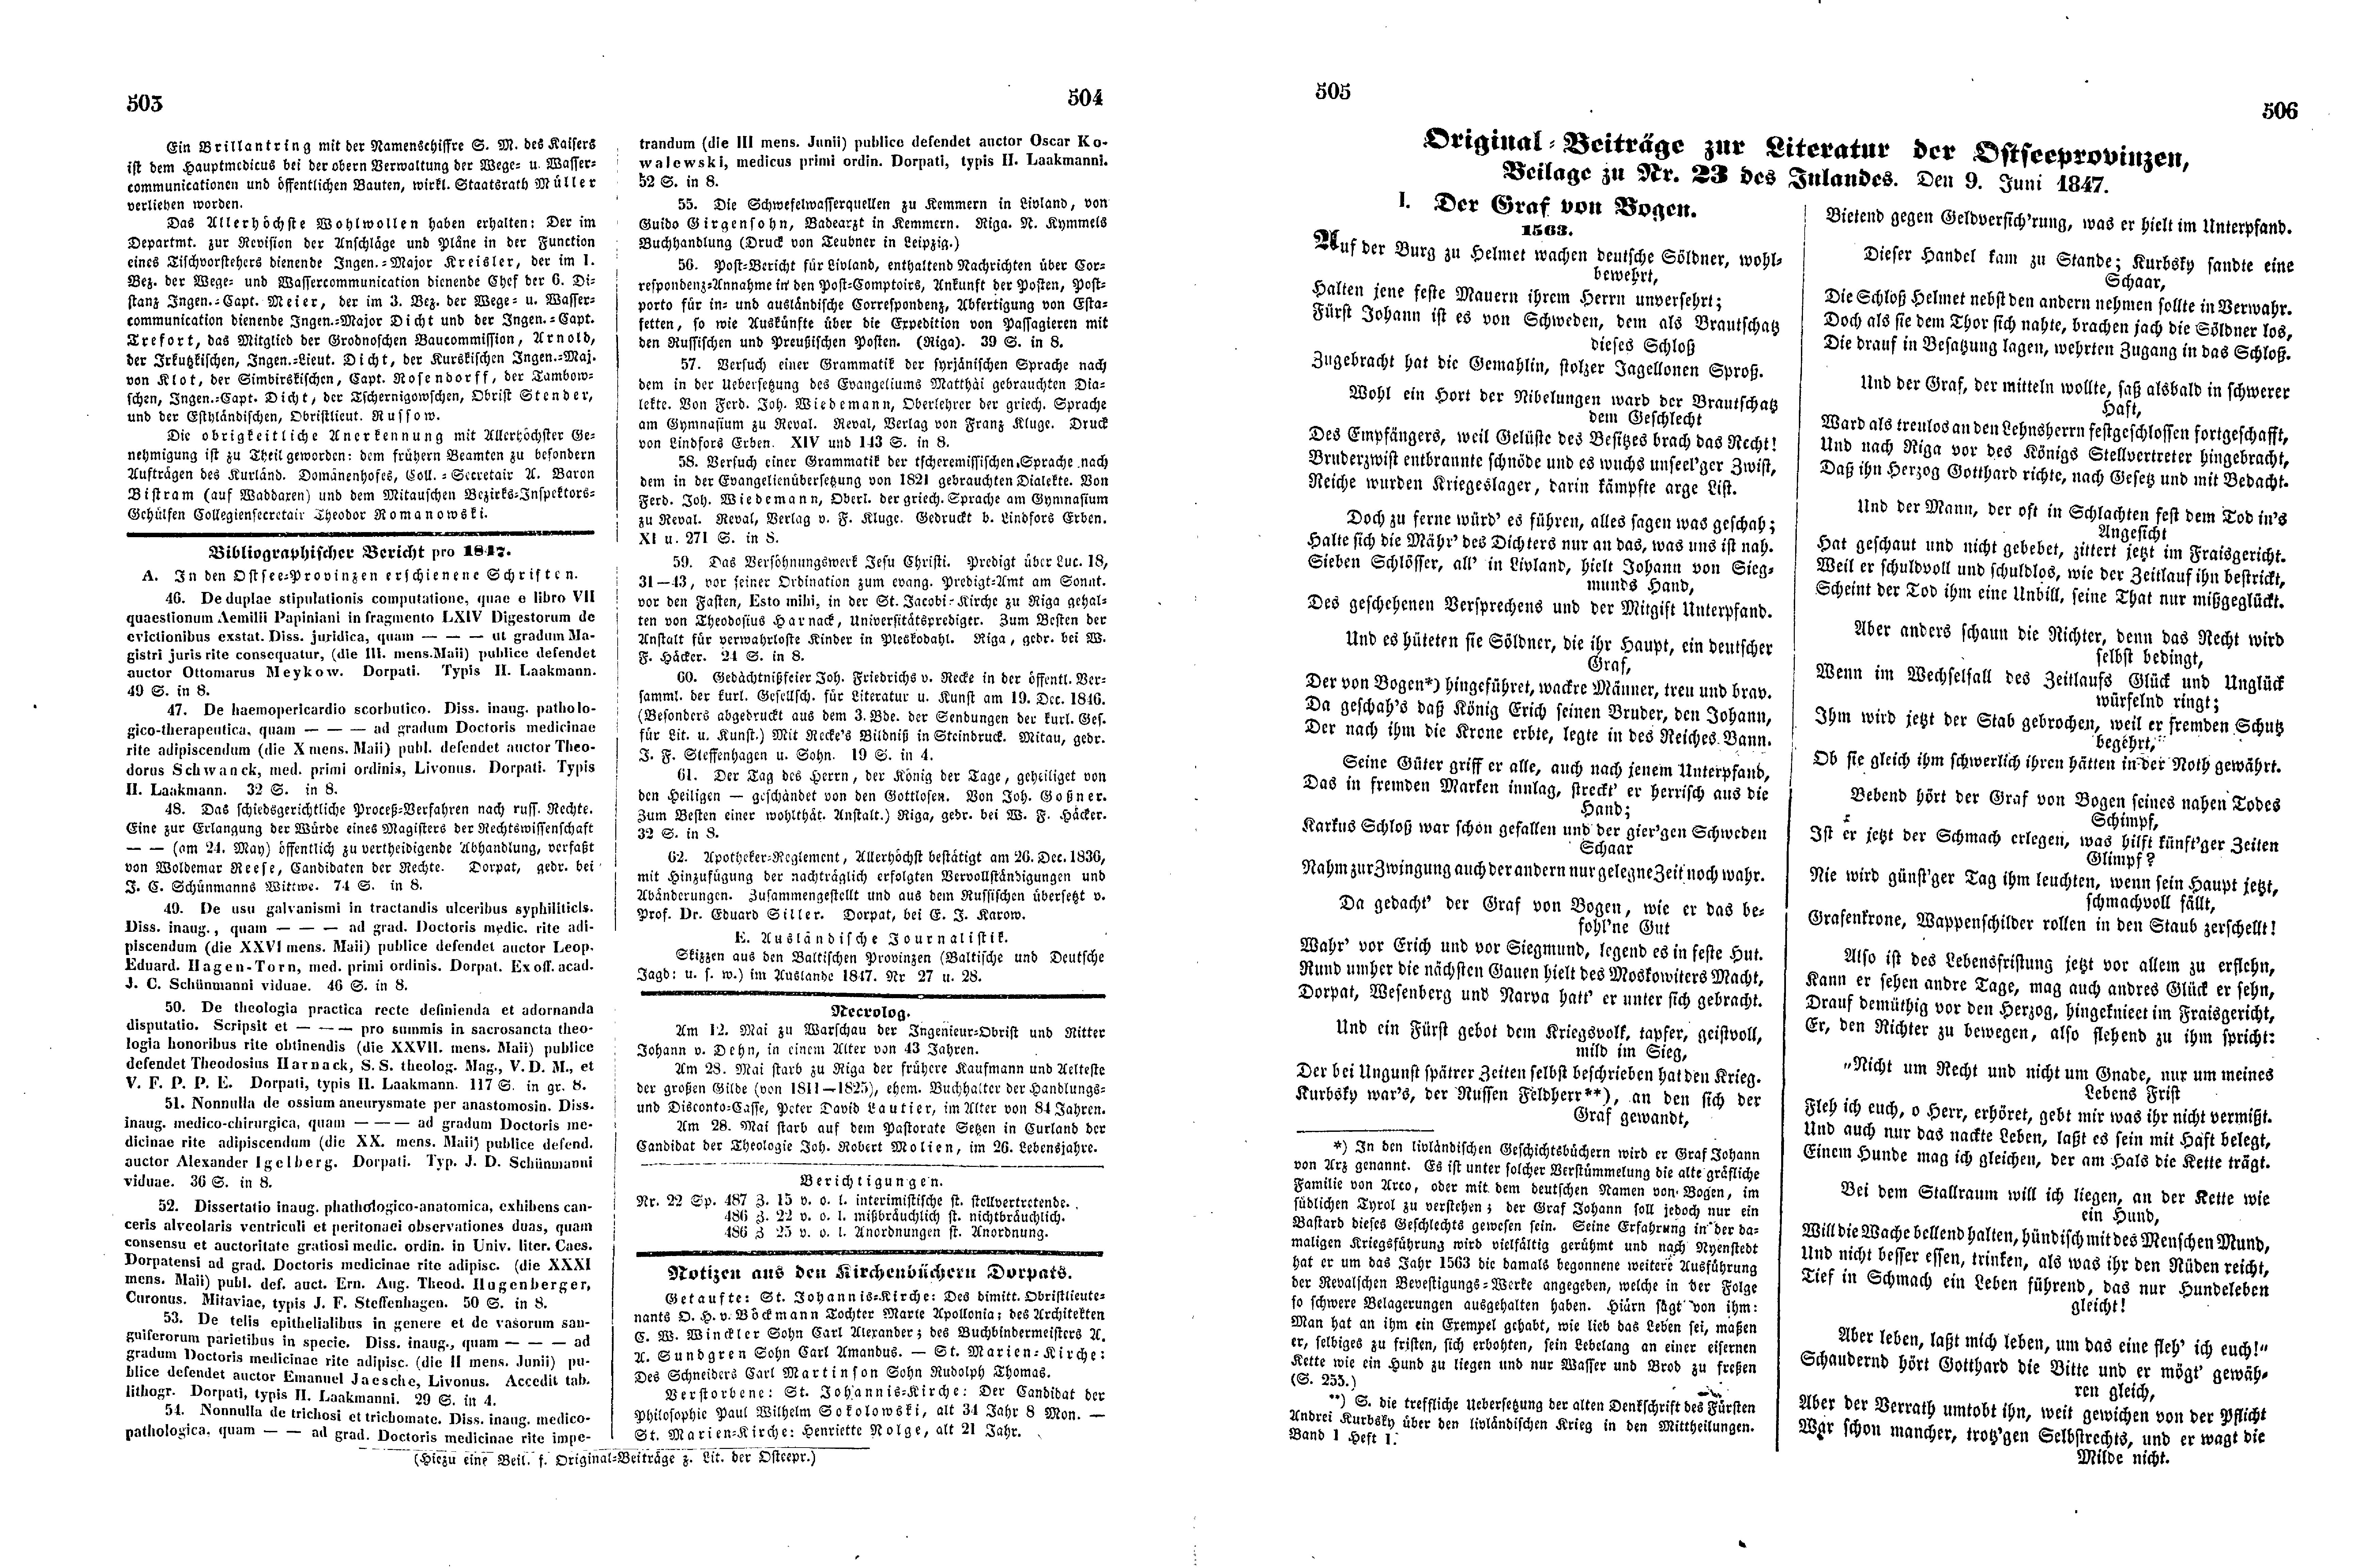 Der Graf von Bogen (1847) | 1. (503-506) Main body of text